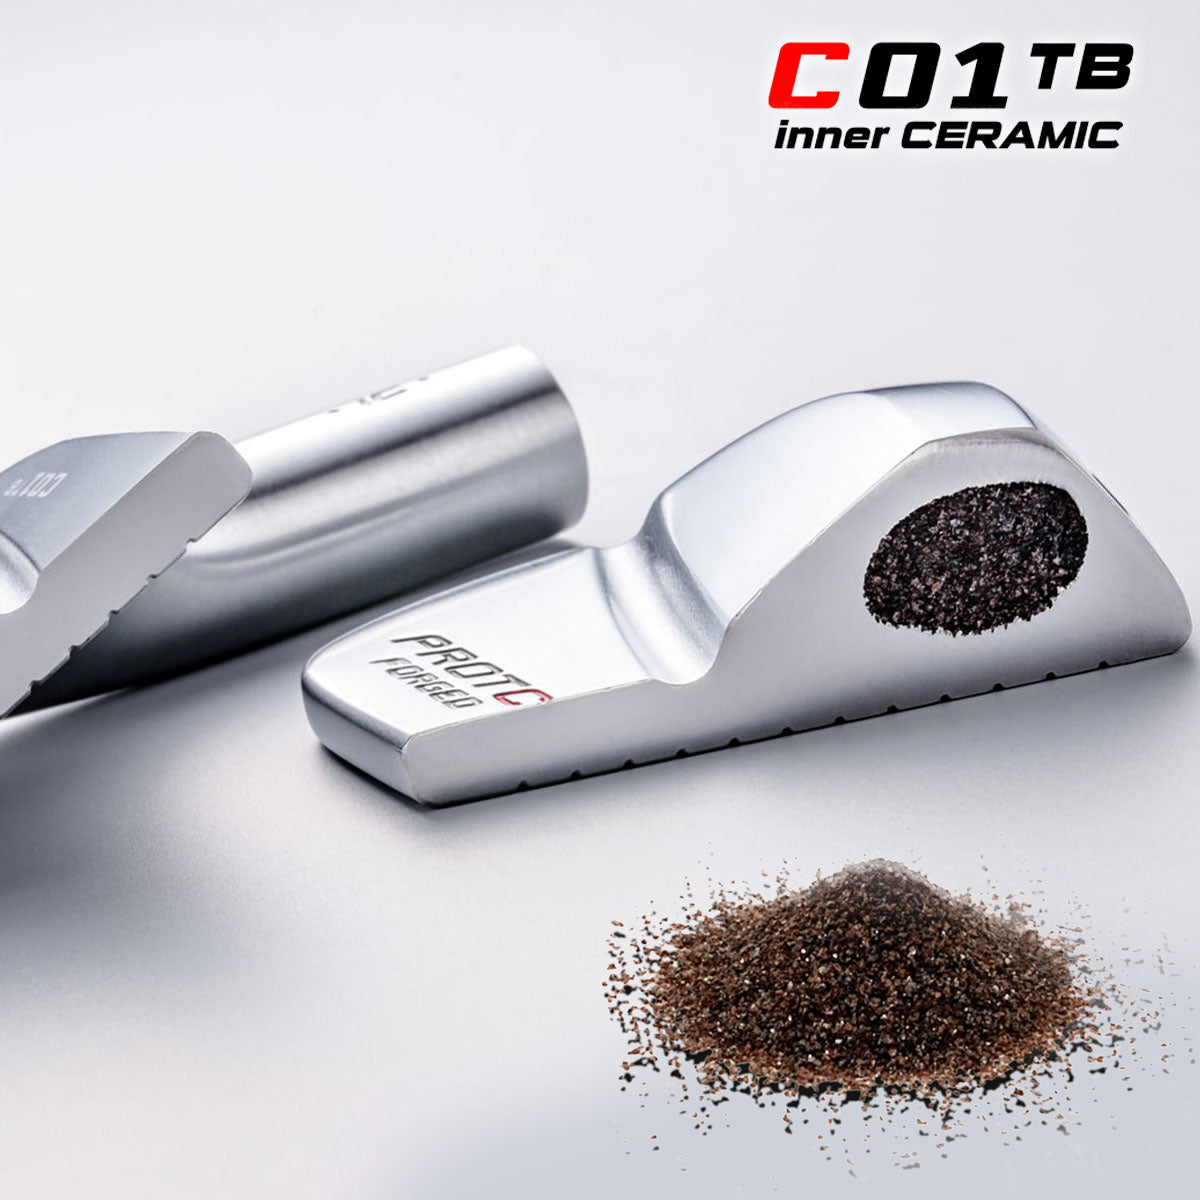 C01TBic, golf club, PROTOCONCEPT Golf, forged irons, ceramic golf irons, golf irons technology